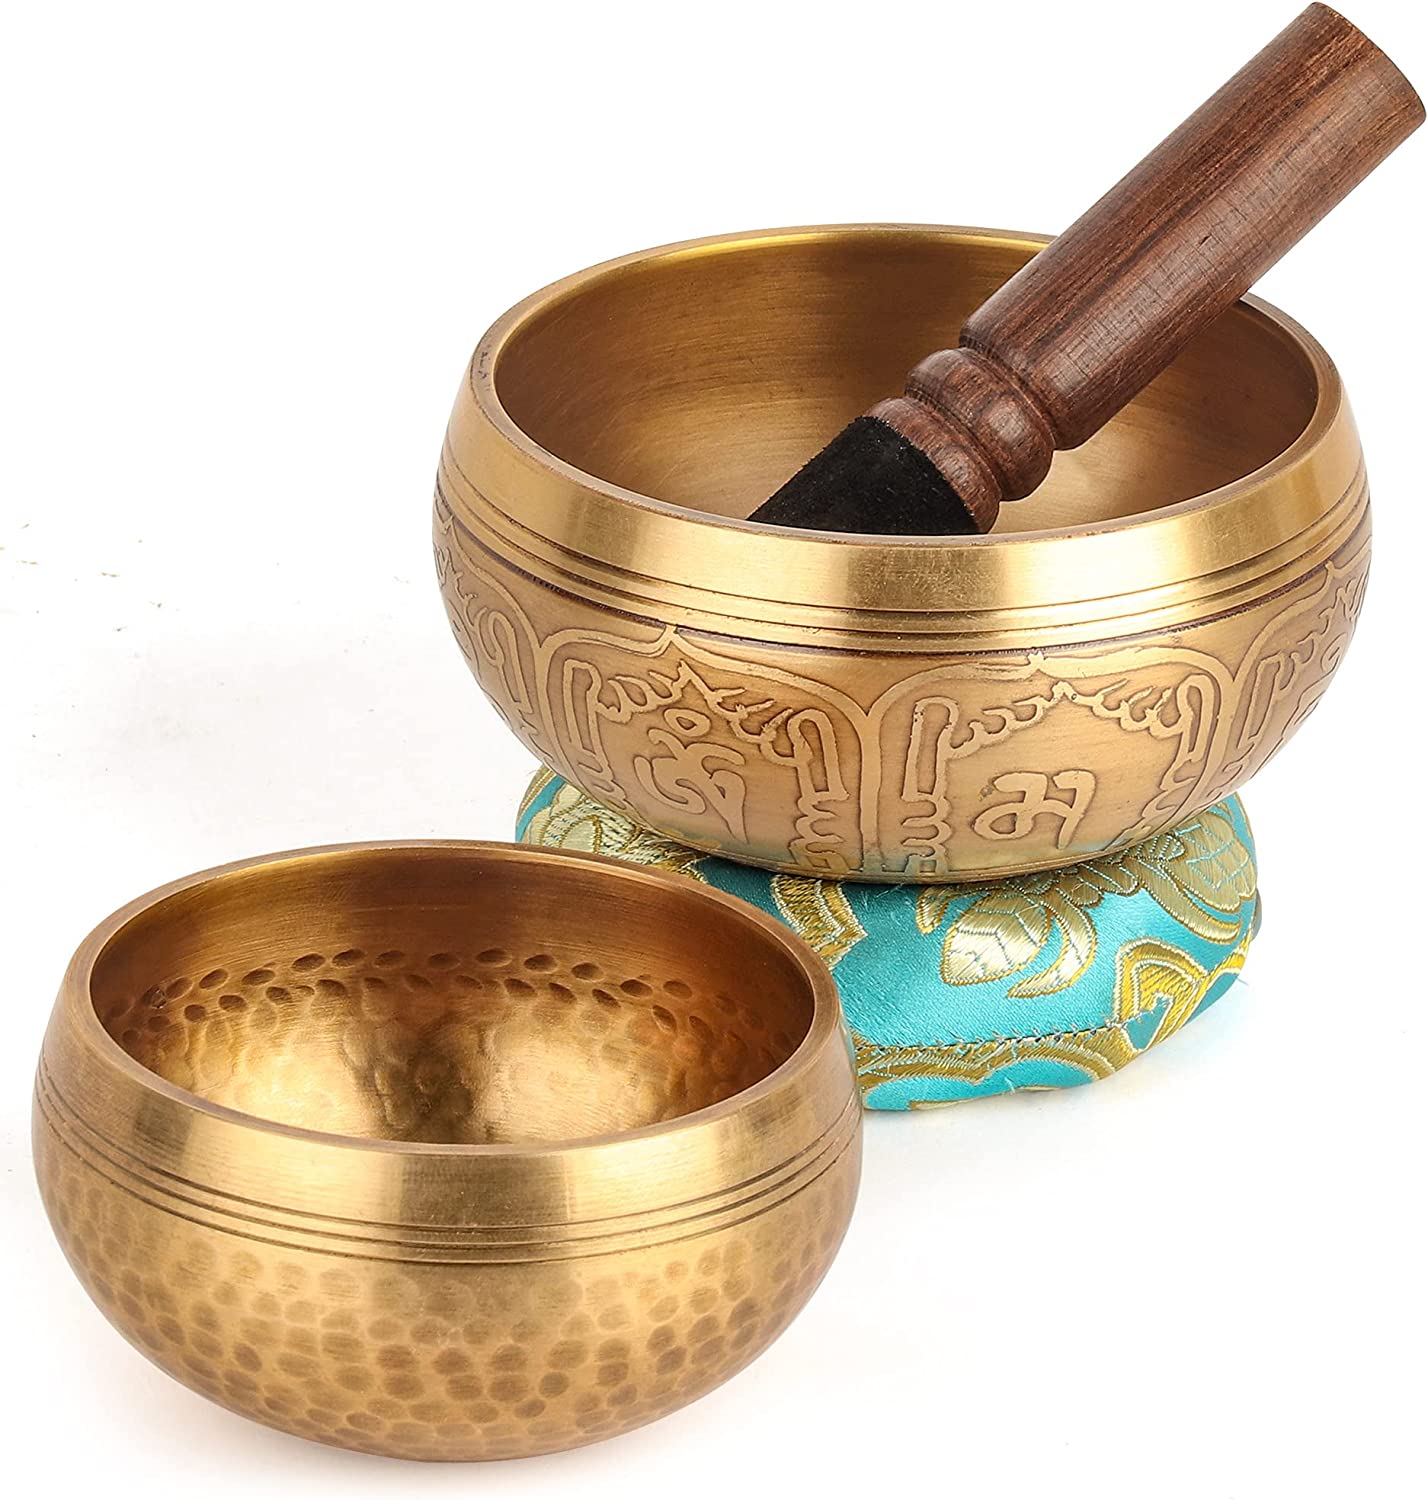 Relaehih 2Pack Tibetan Singing Bowls Set